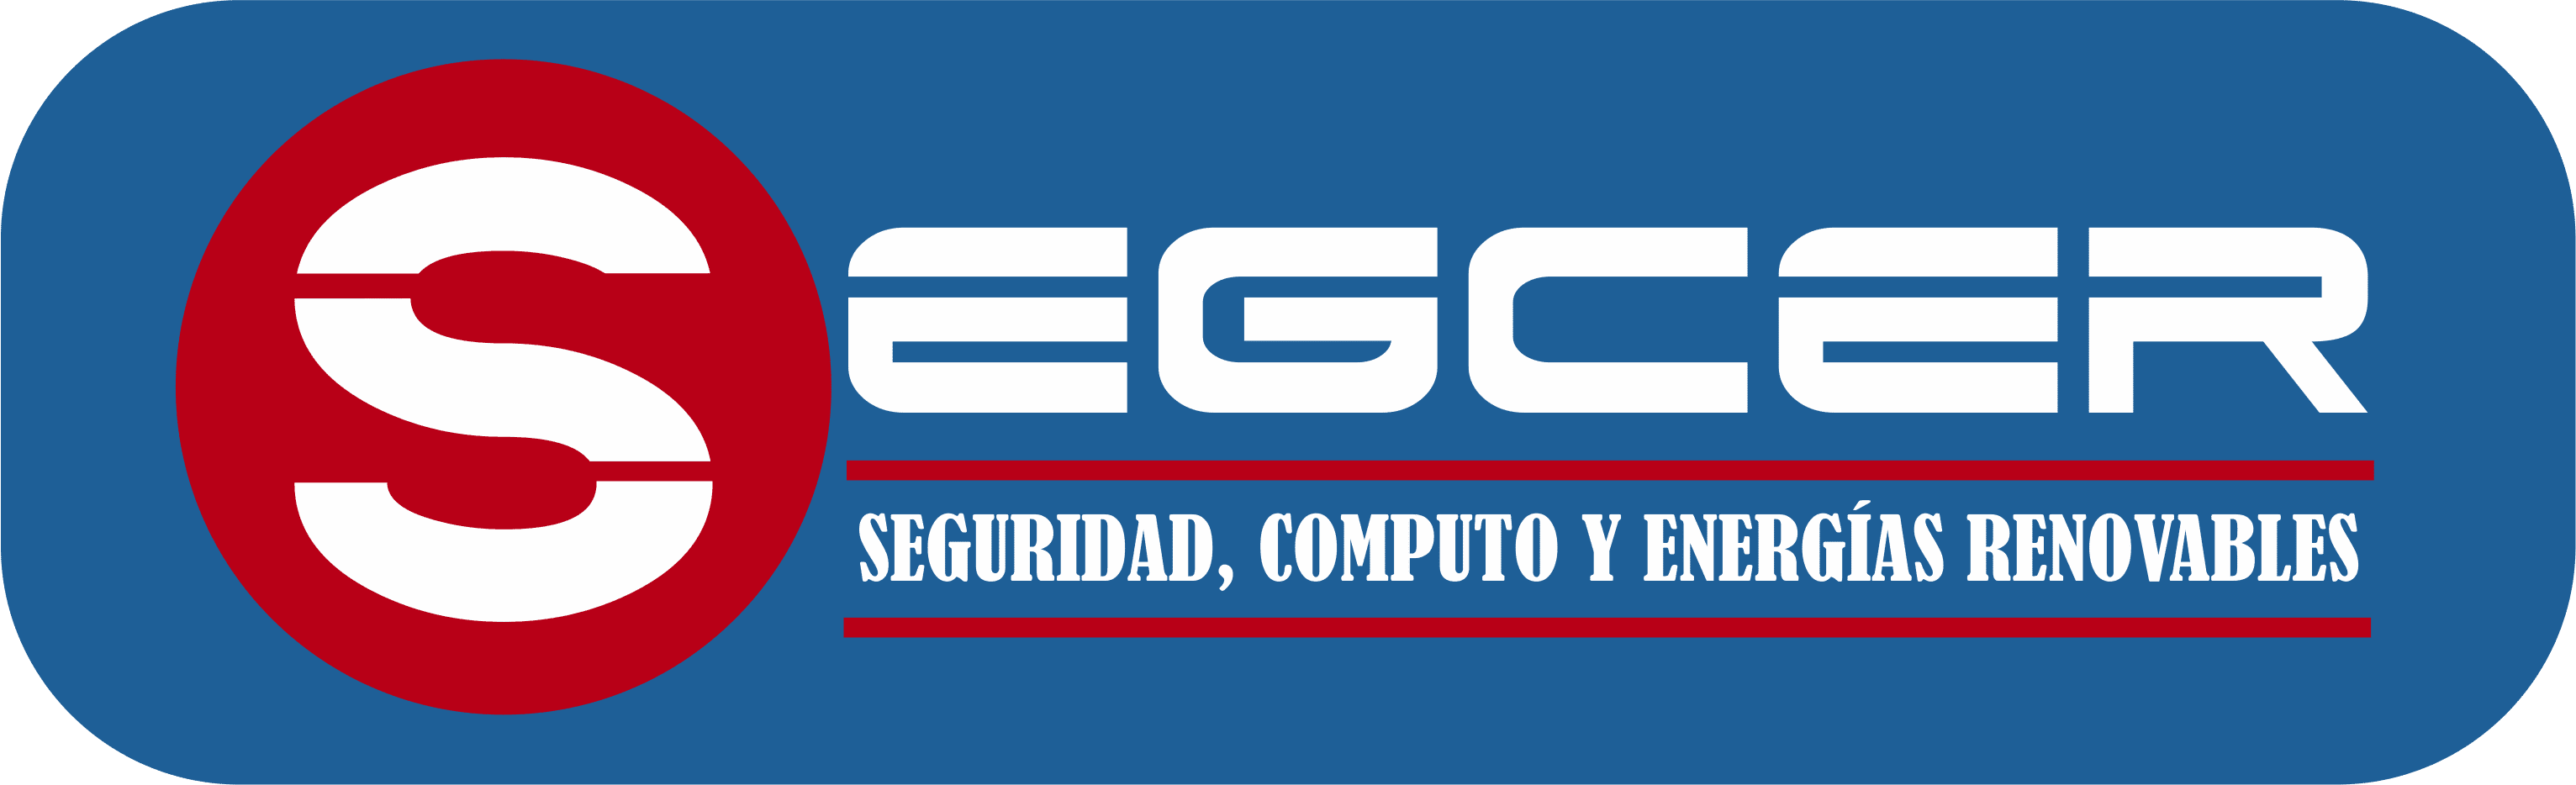 SEGCER (Seguridad, Computo y Energías Renovables)